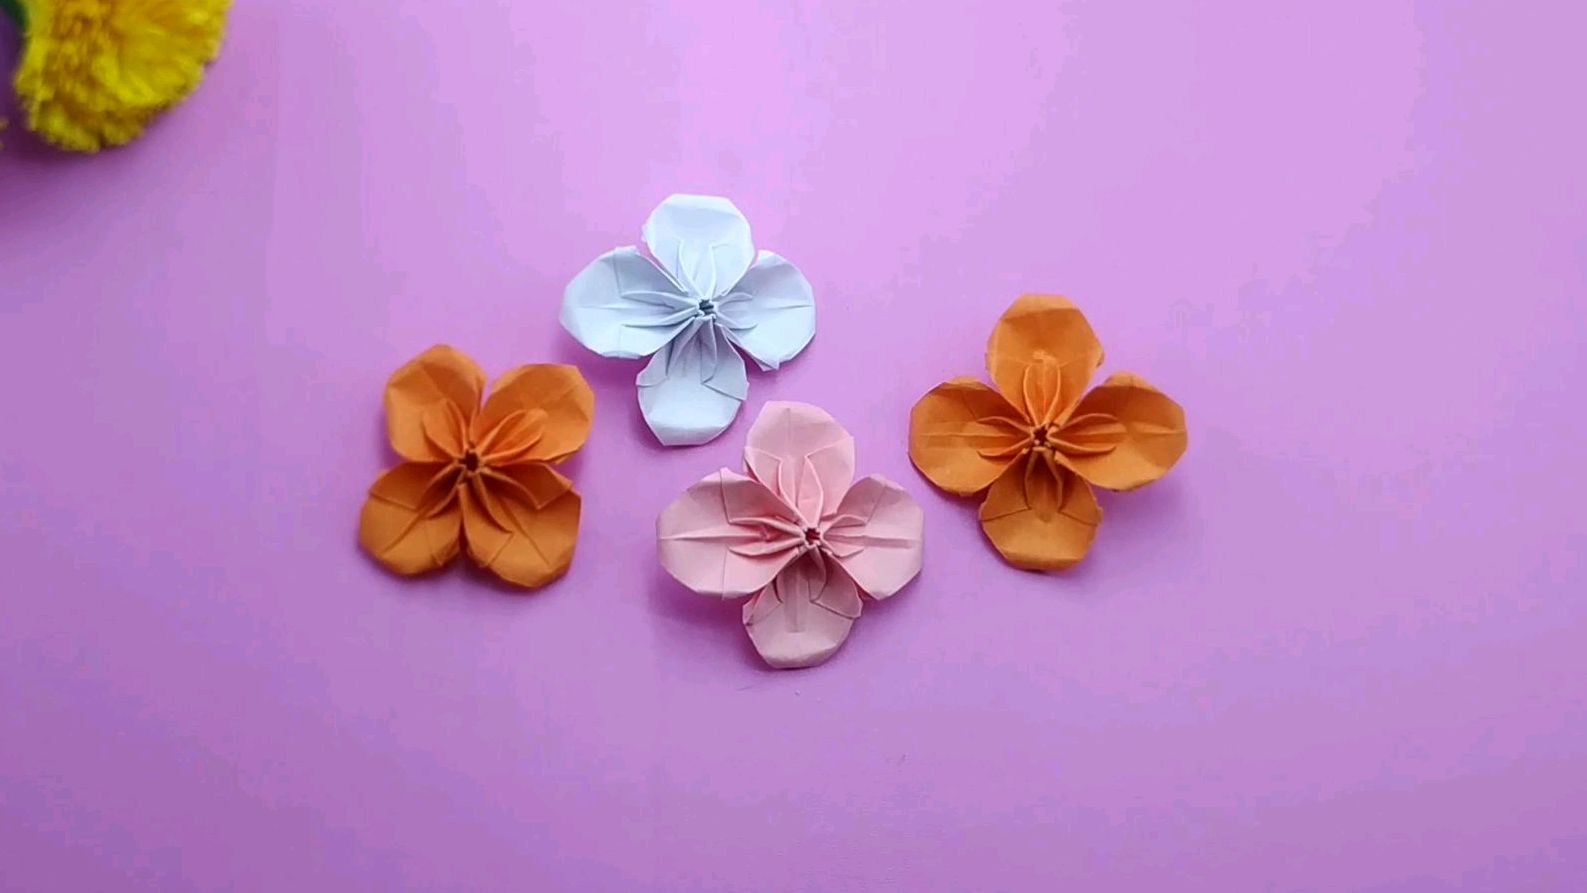 漂亮的四瓣花折纸教程来了,用一张正方形彩纸变成一朵花,神奇吧